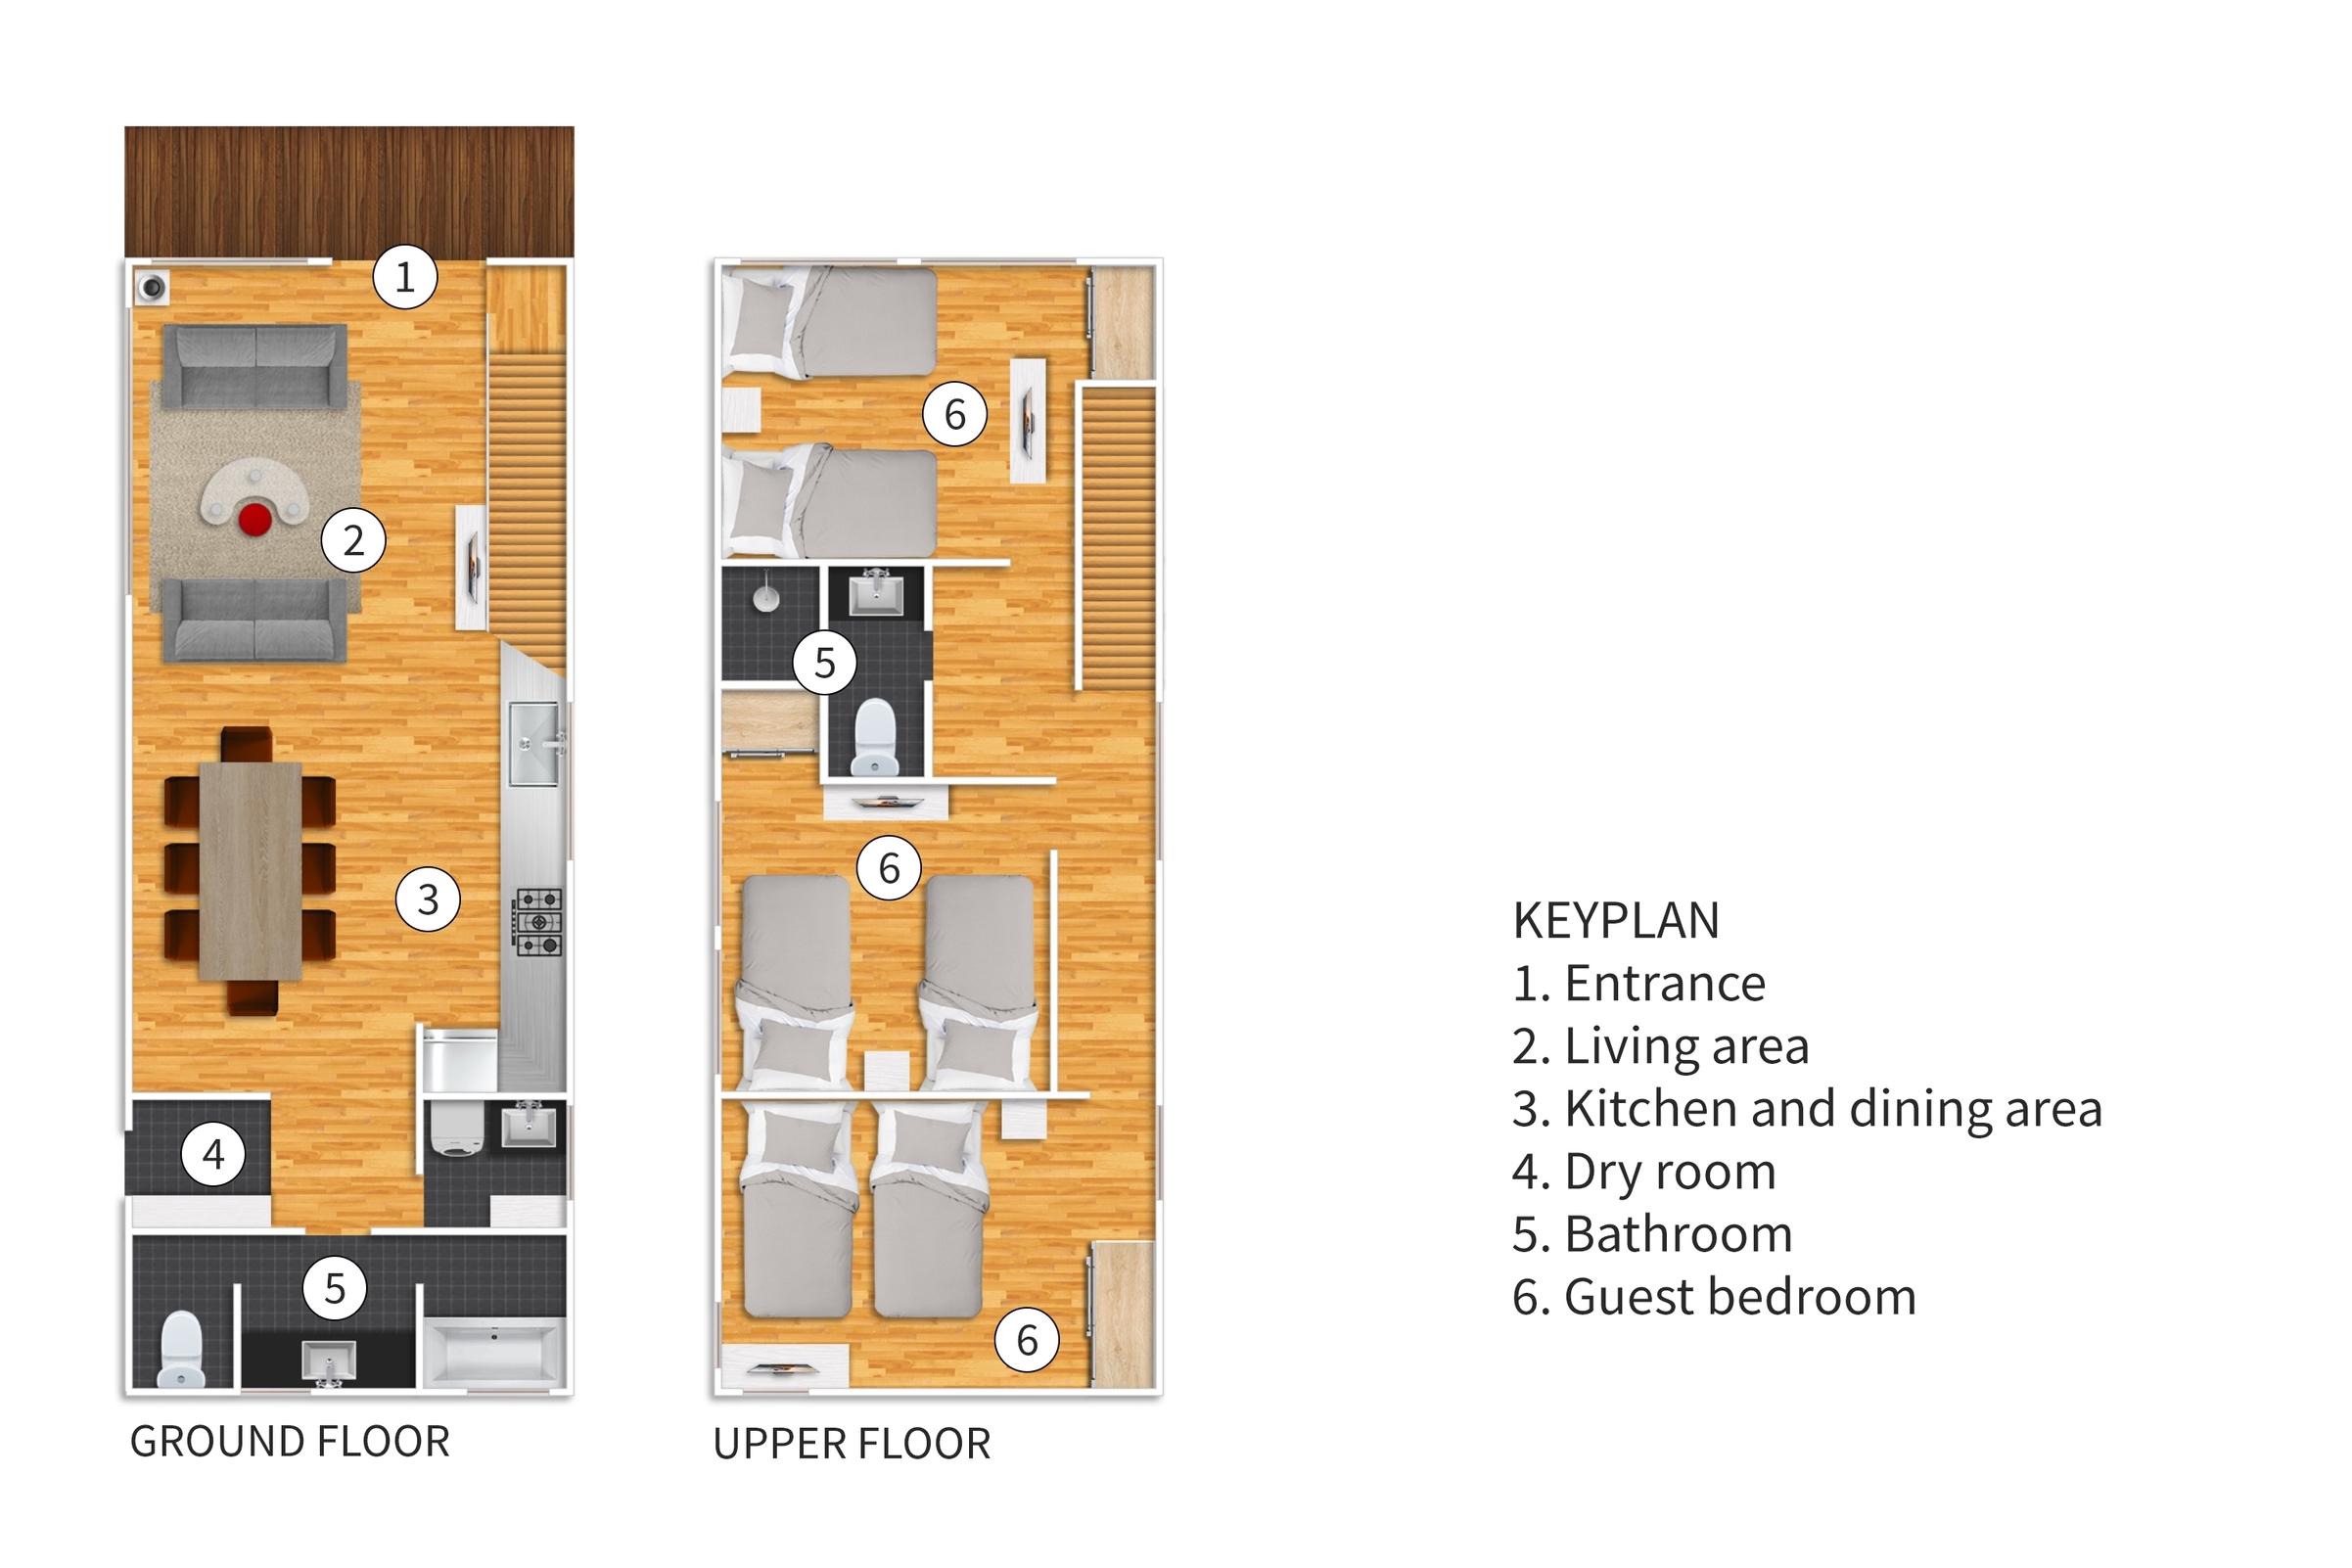 Seisei 3 bedroom floor plans